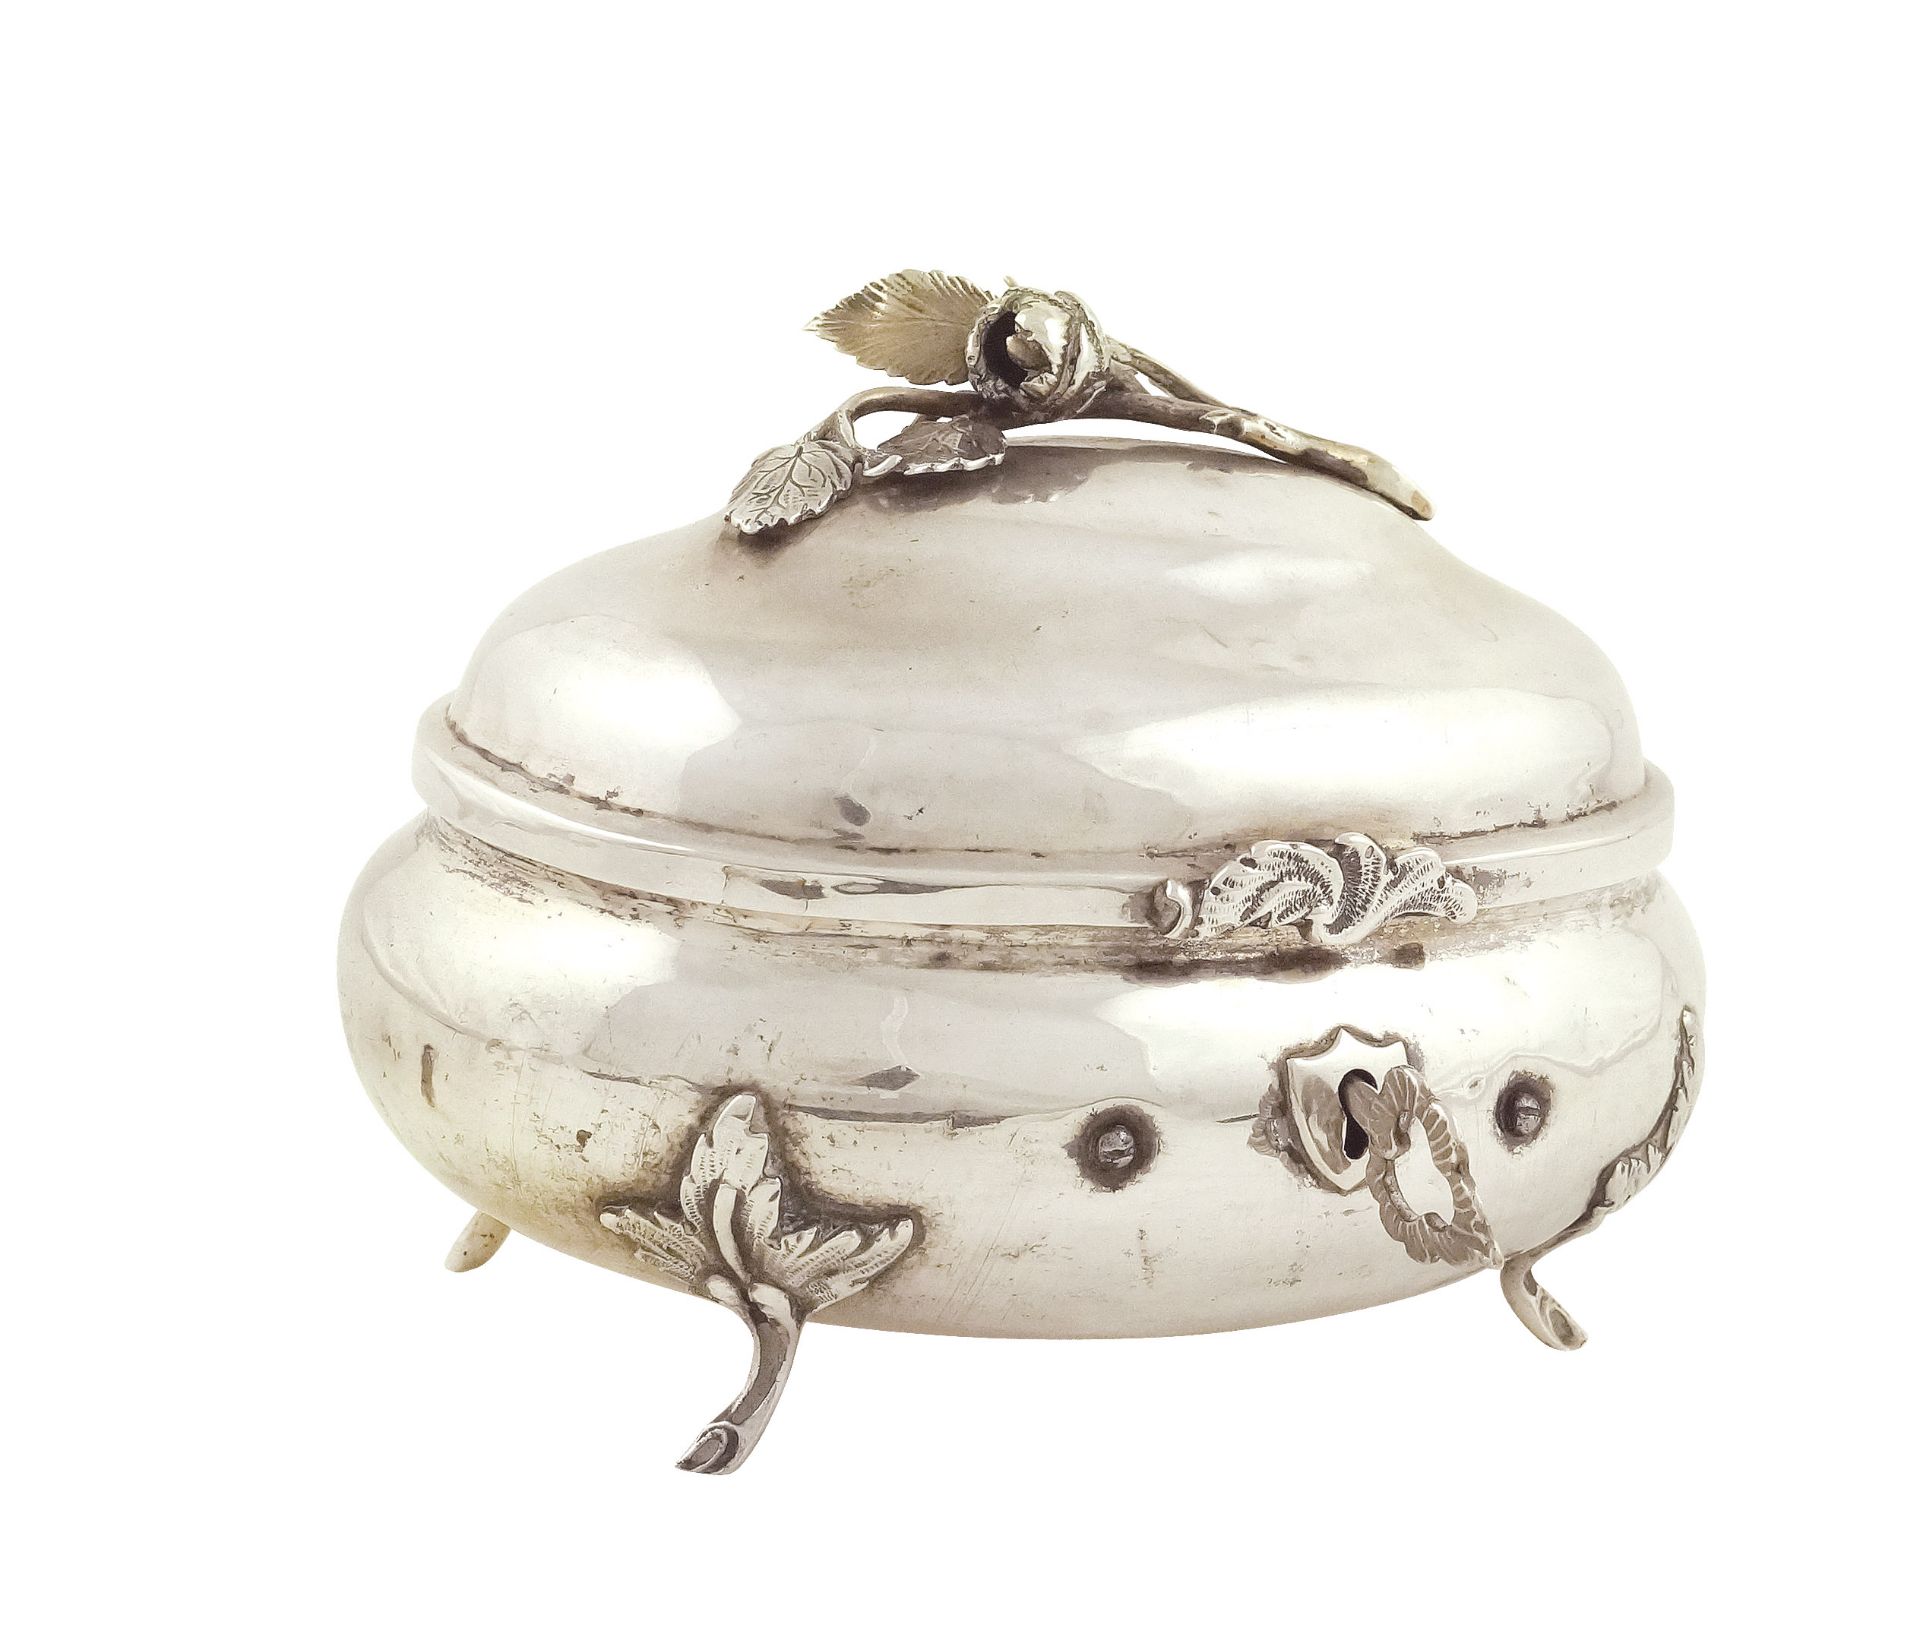 A silver jewellery casket